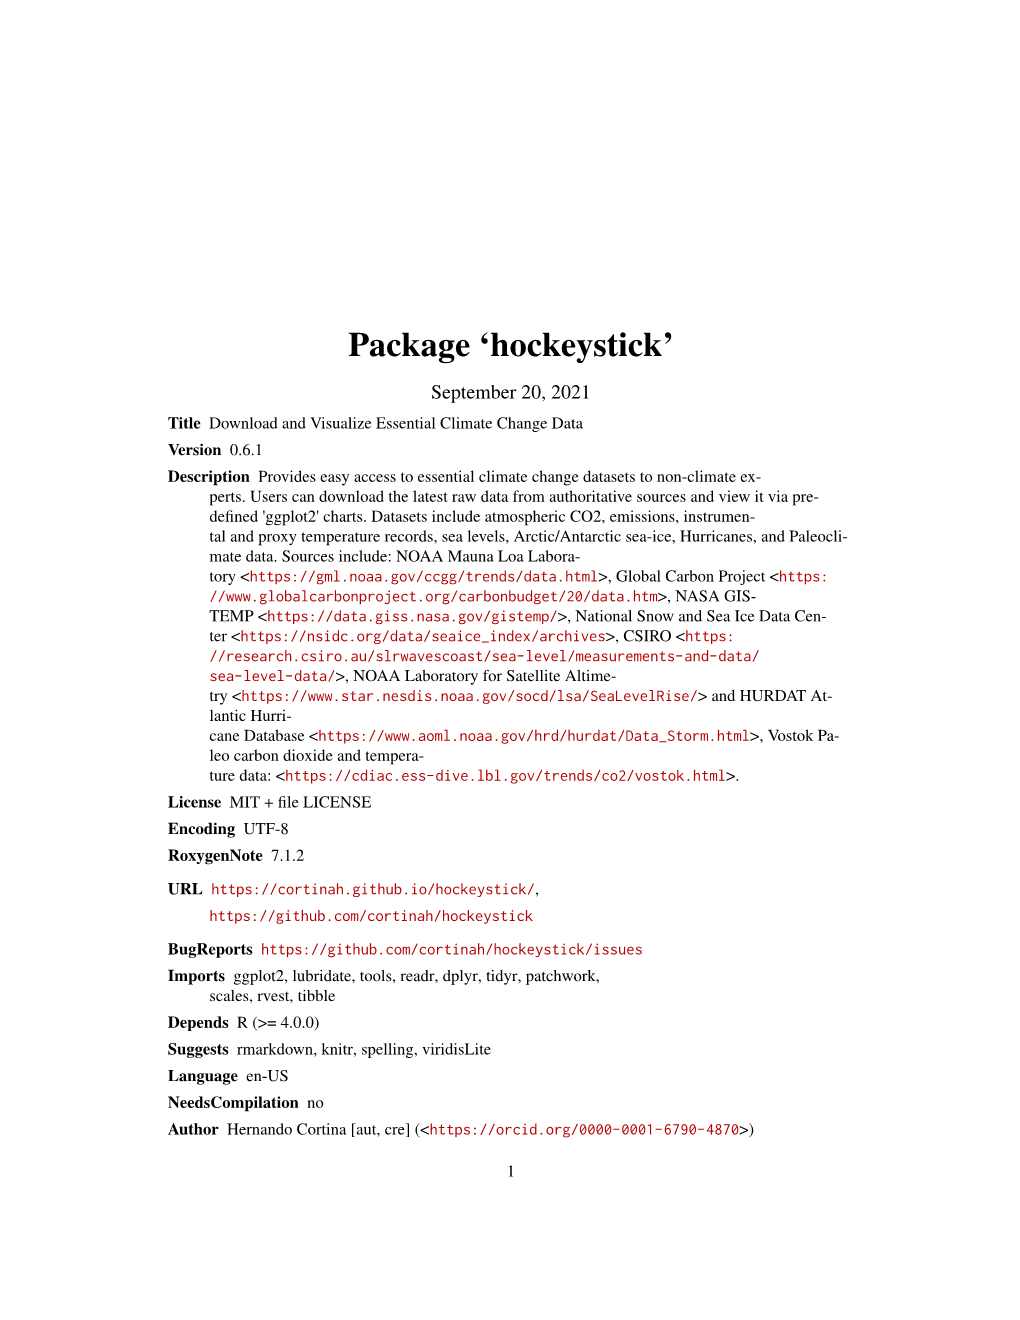 Package 'Hockeystick'